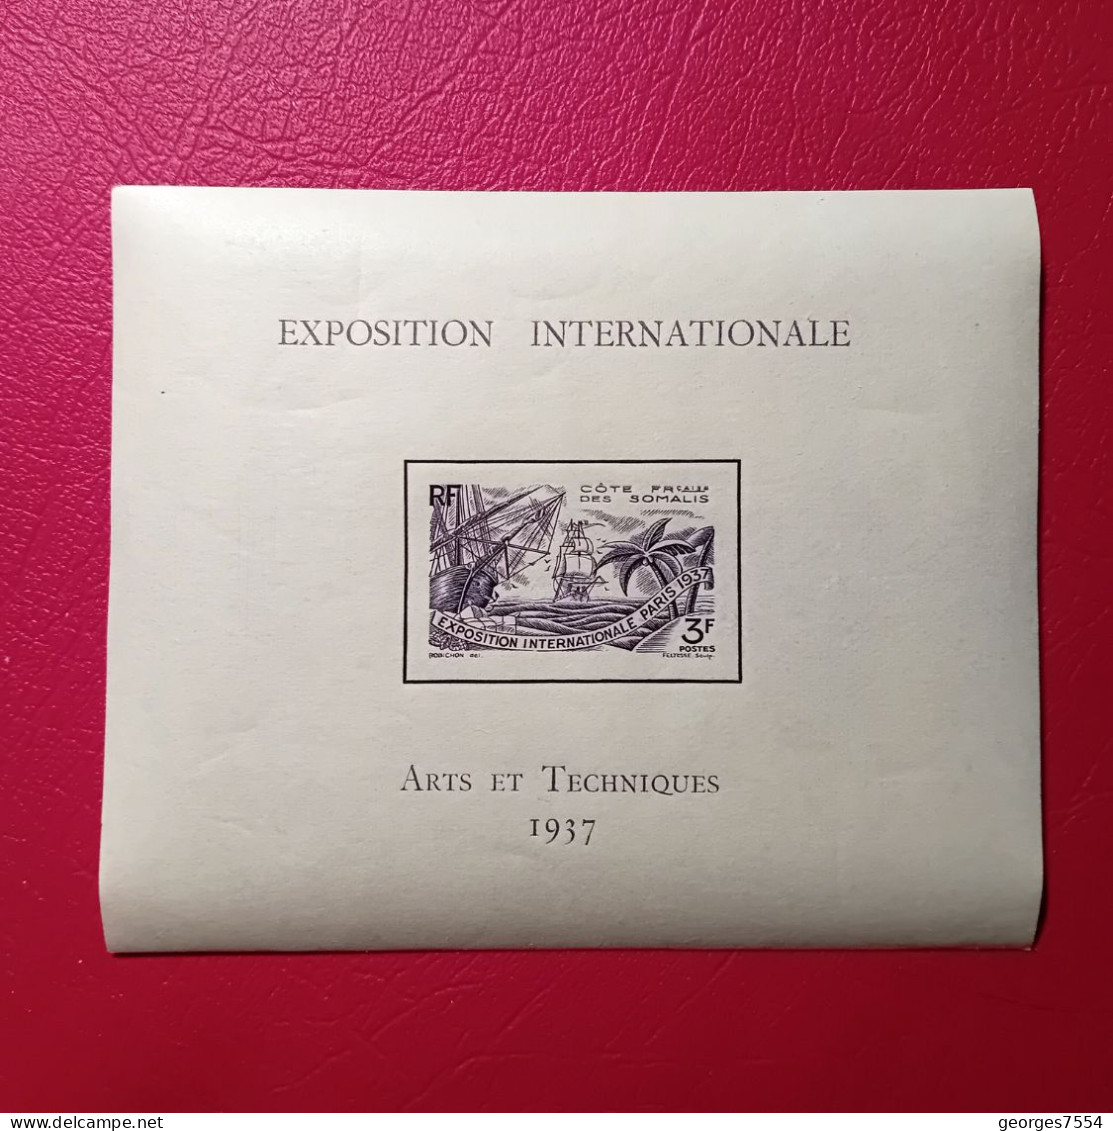 BLOC - COTE FR. DES SOMALIS - EXPOSITION INTERNATIONALE - PARIS 1937 - ARTS ET TECHNIQUES  NEUF** - 1937 Exposition Internationale De Paris